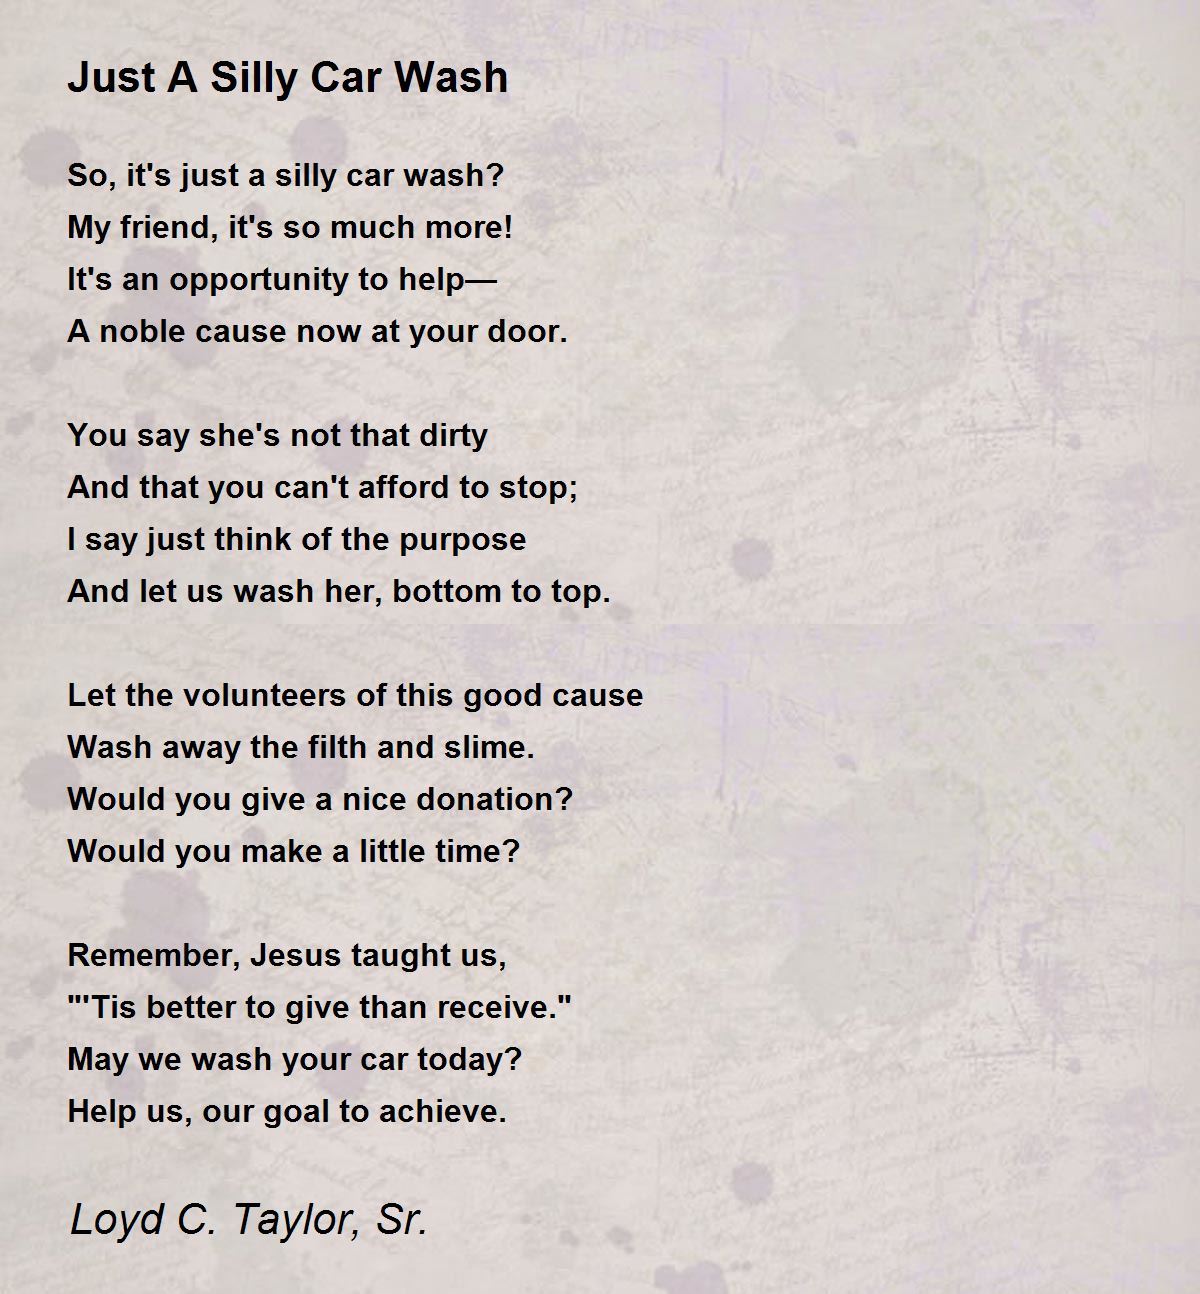 Just A Silly Car Wash - Just A Silly Car Wash Poem by Loyd C Taylor Sr